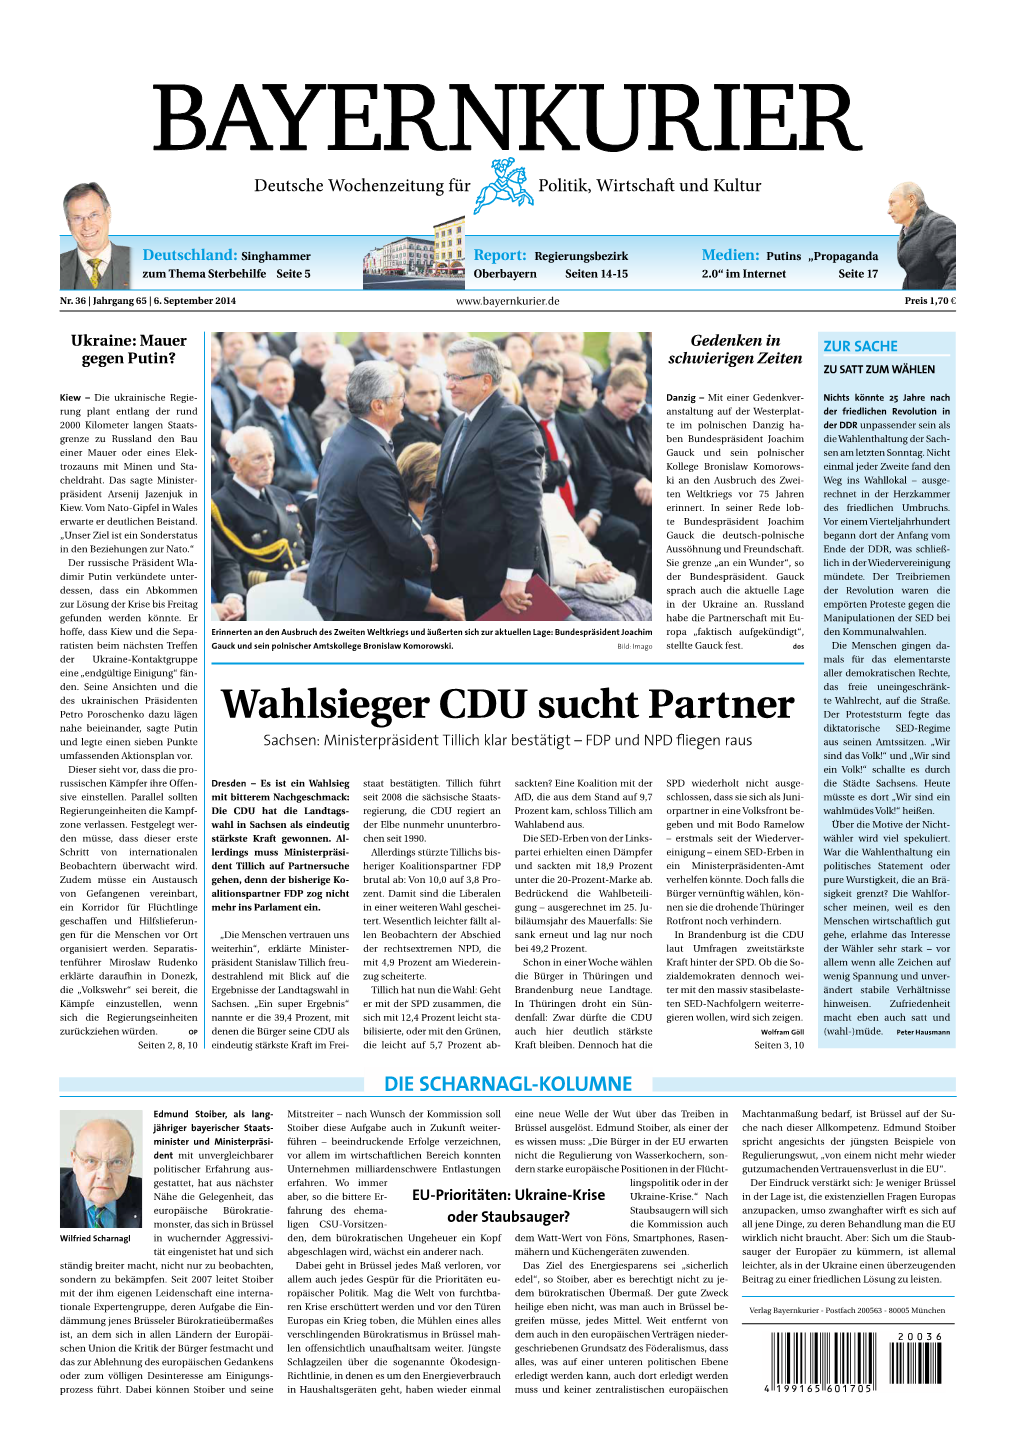 Wahlsieger CDU Sucht Partner